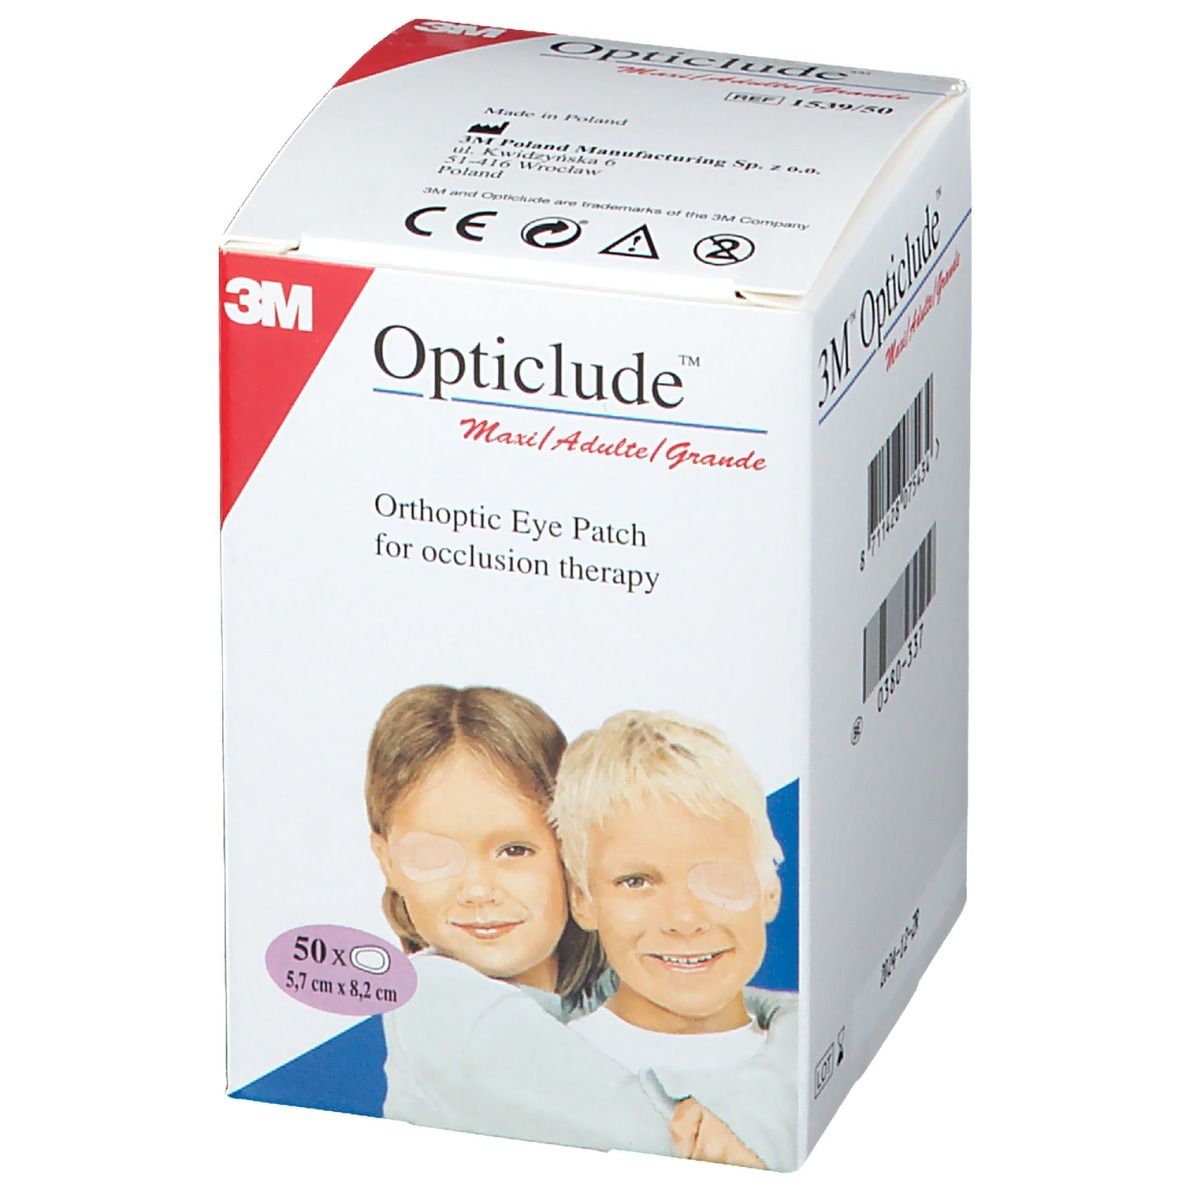 3M Opticlude™ Cerotto Oculare per Terapia Occlusiva